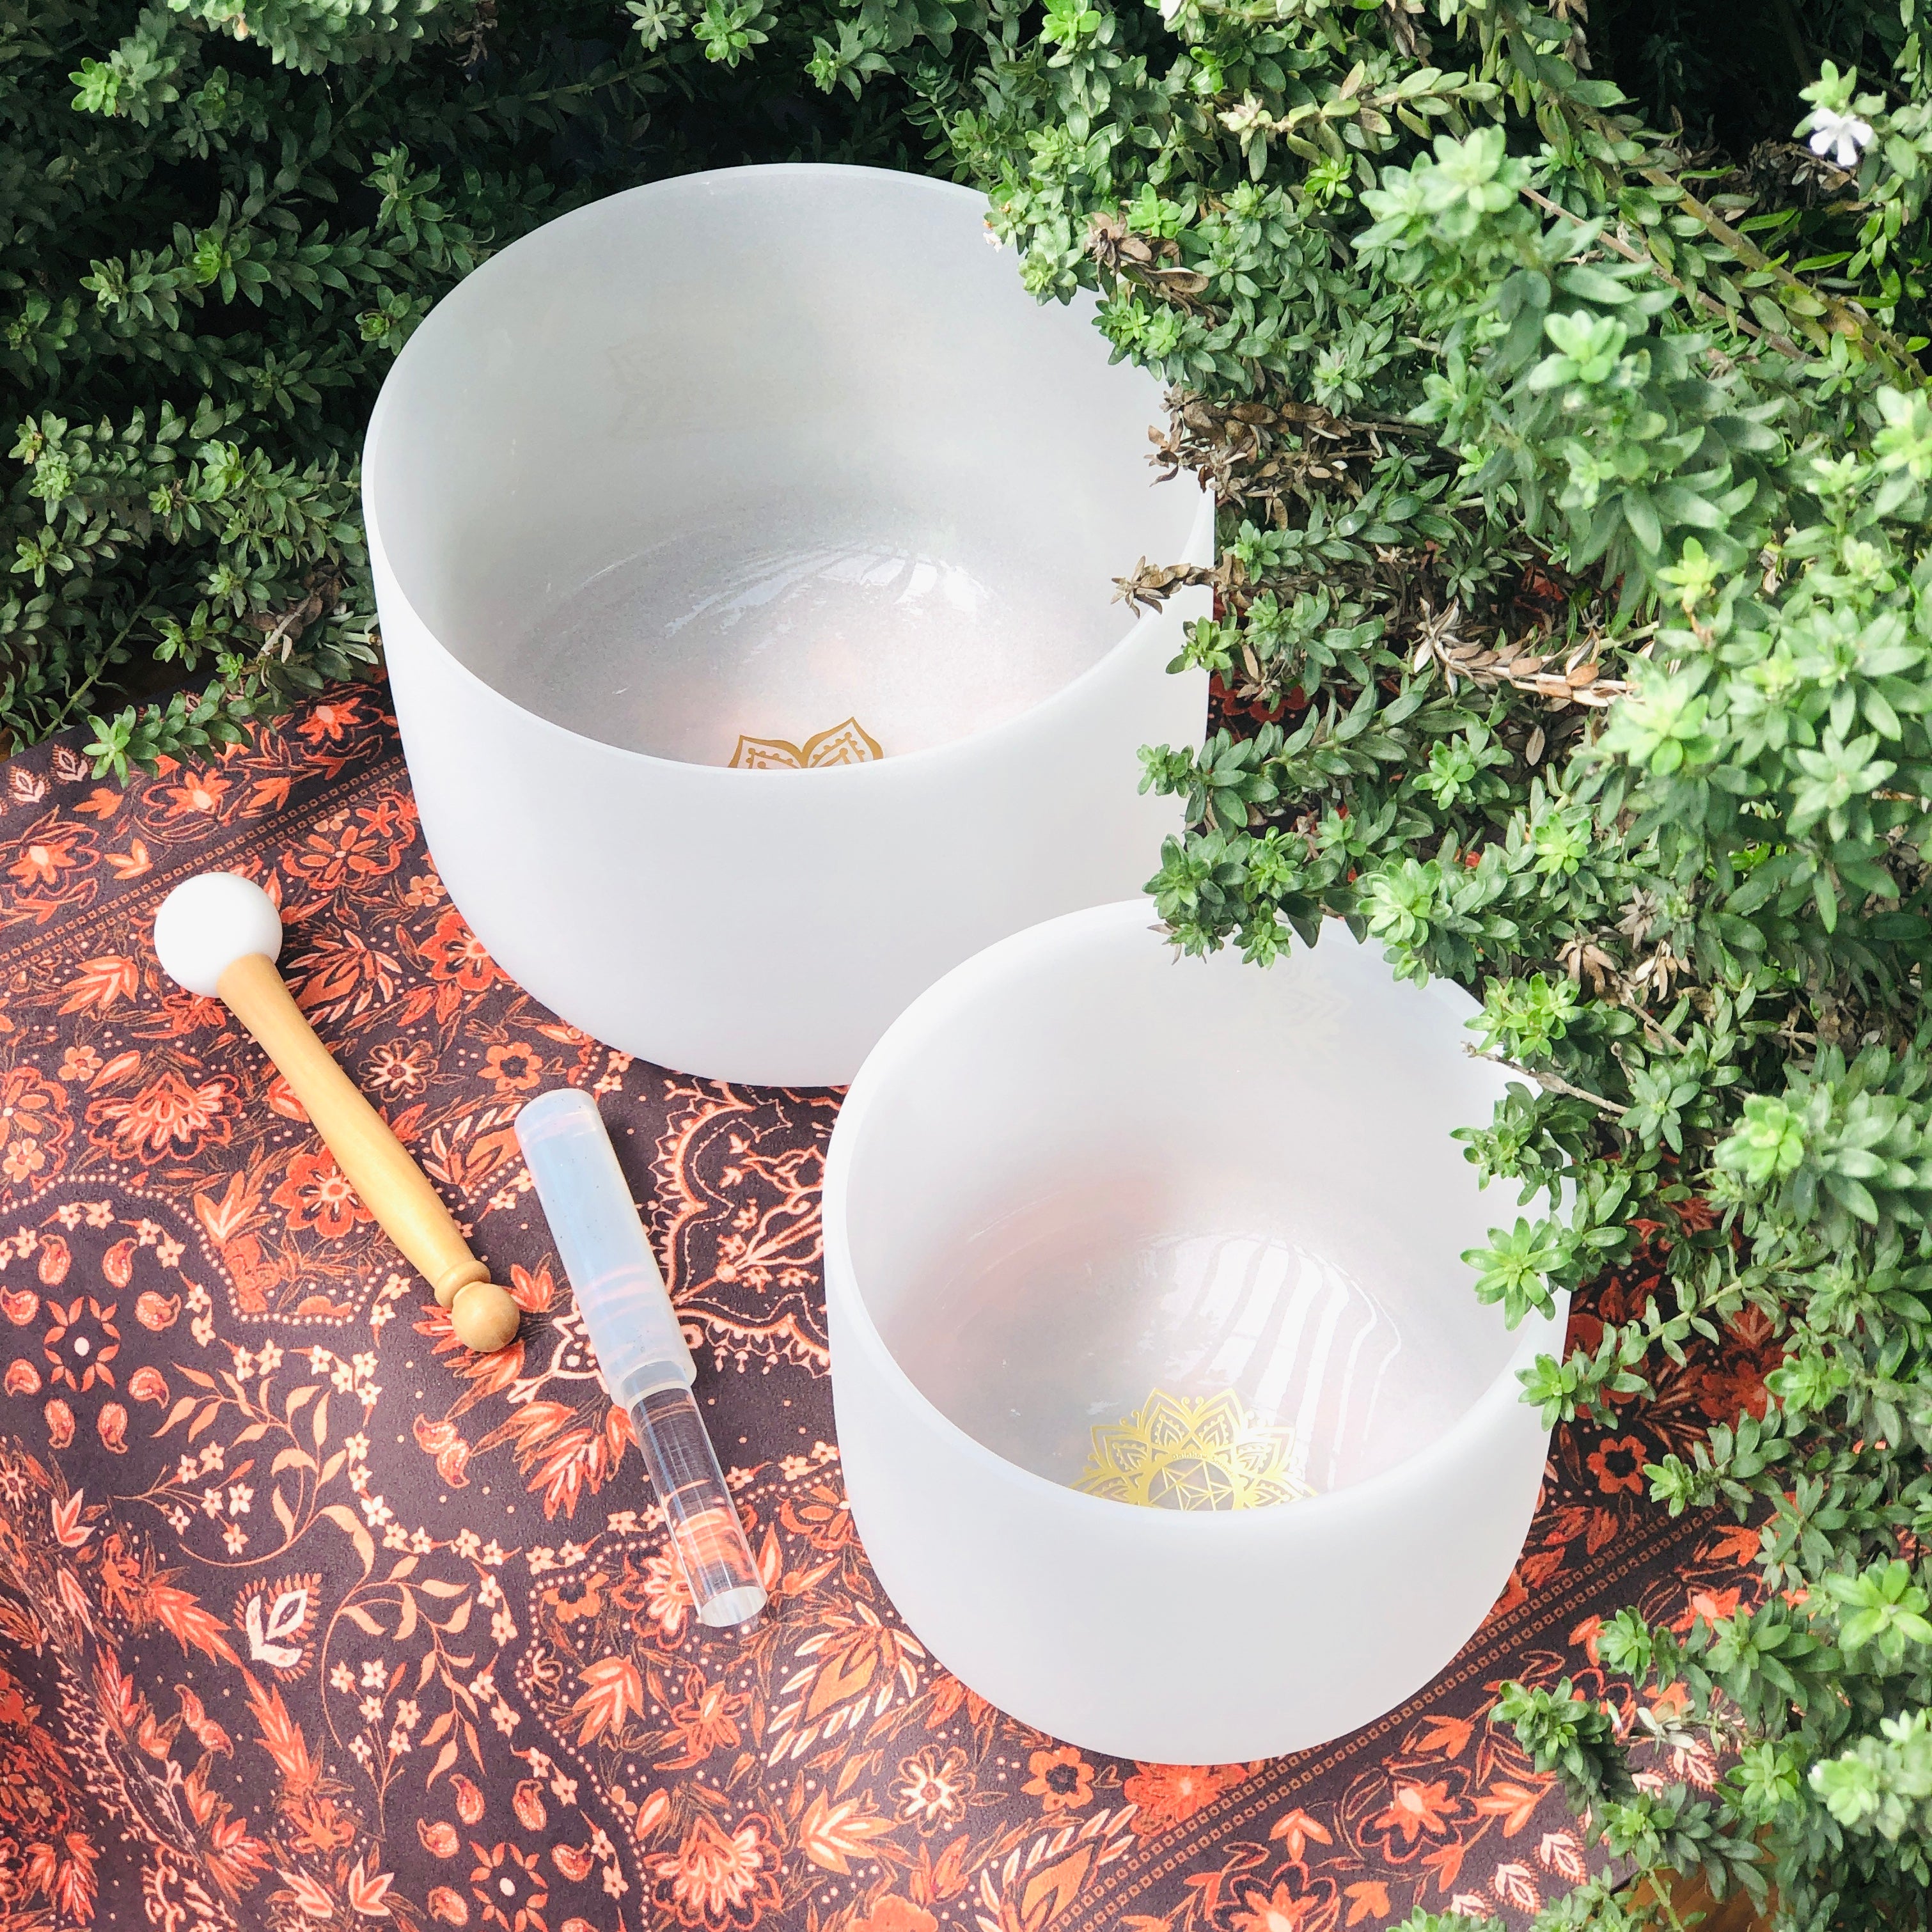 Earth & Soul Stars︱Set of 2 Crystal Singing Bowls in Beige Bag